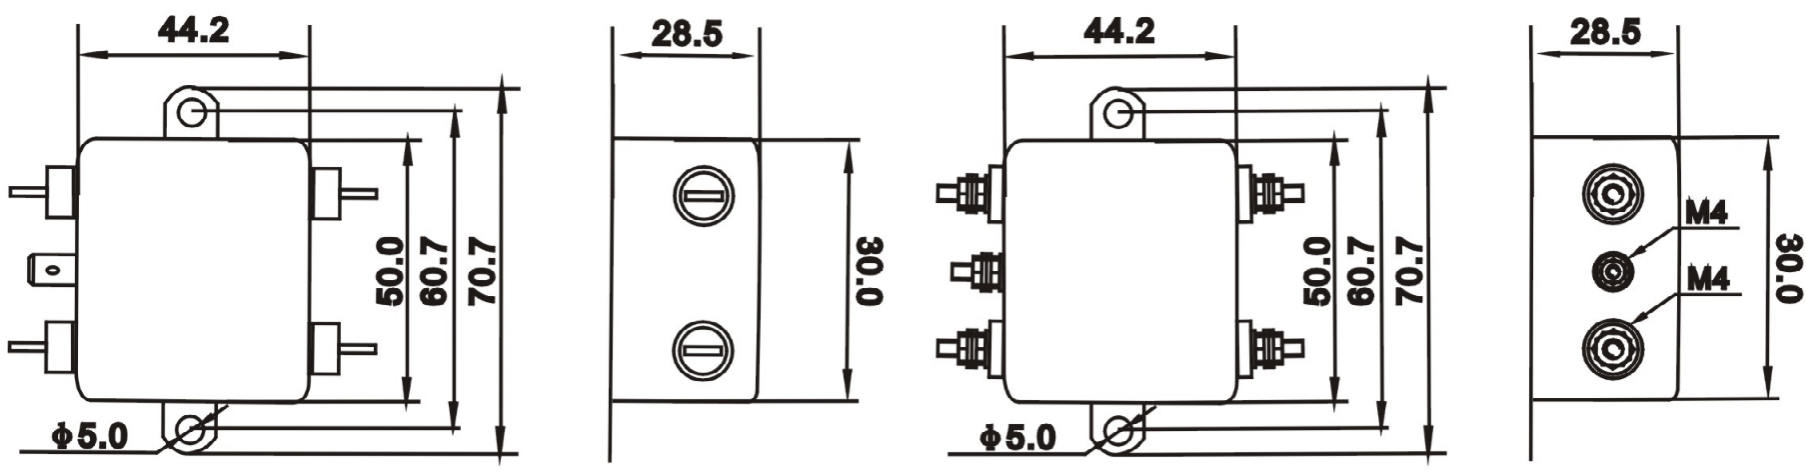 Filtros de ruído de potencia EMI da serie DAA1 (3)